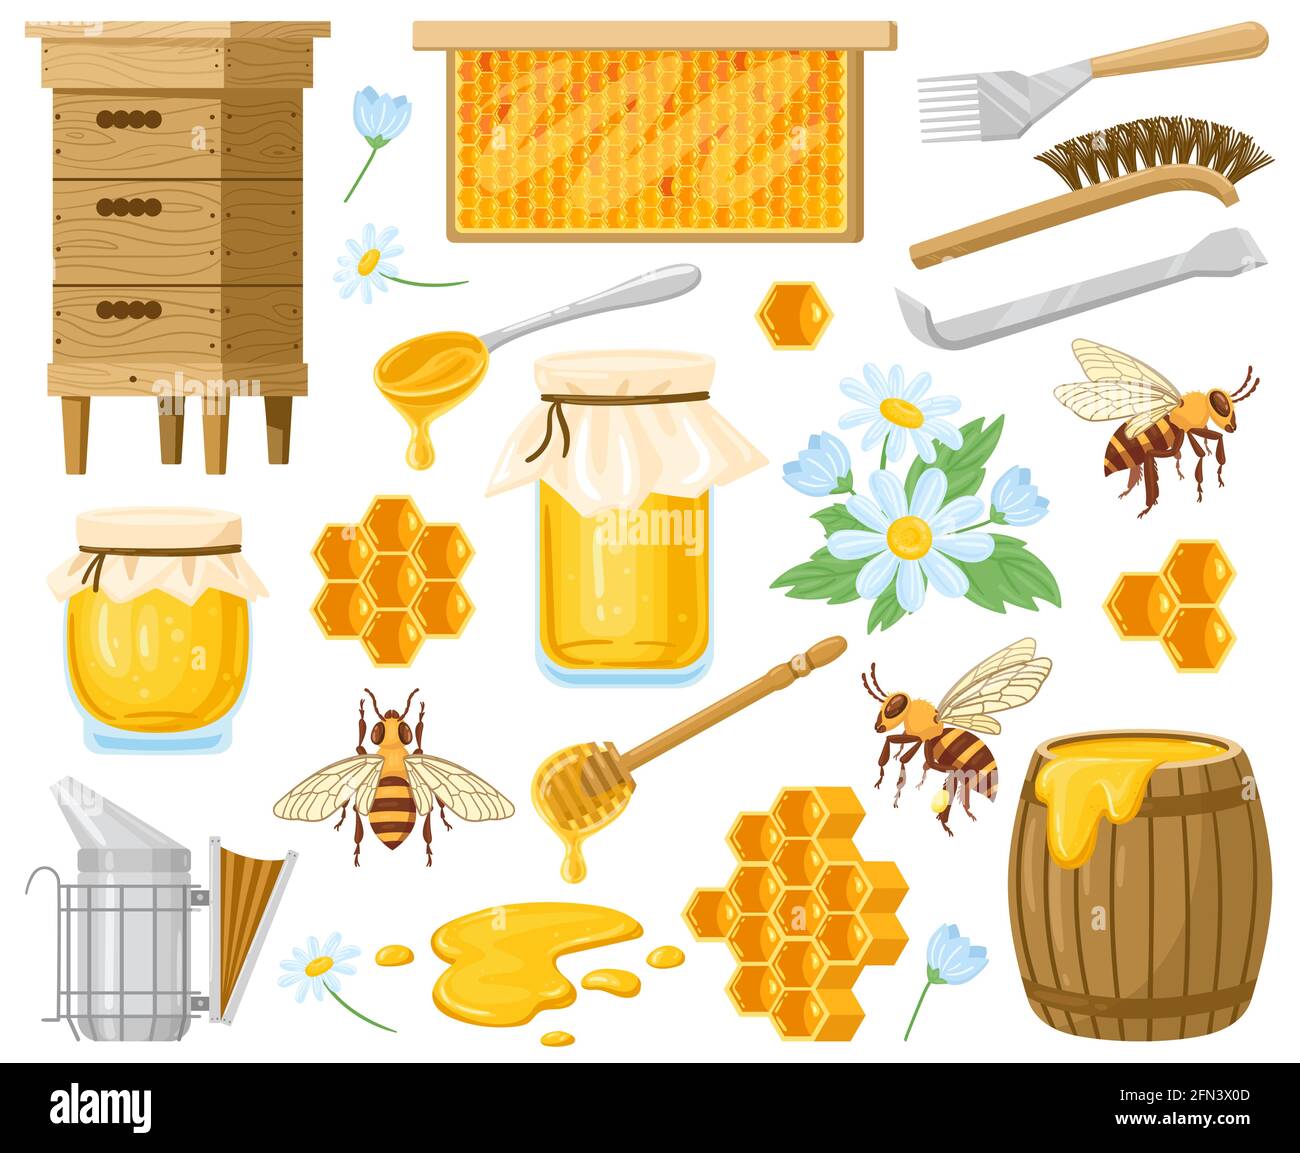 Cartoon-Honig. Bienenzuchtelemente, Waben, Bienenstock, Bienen und Honig in Glas isoliert Vektor-Illustration-Set. Natürliche Süßigkeiten, Honig Symbole Stock Vektor